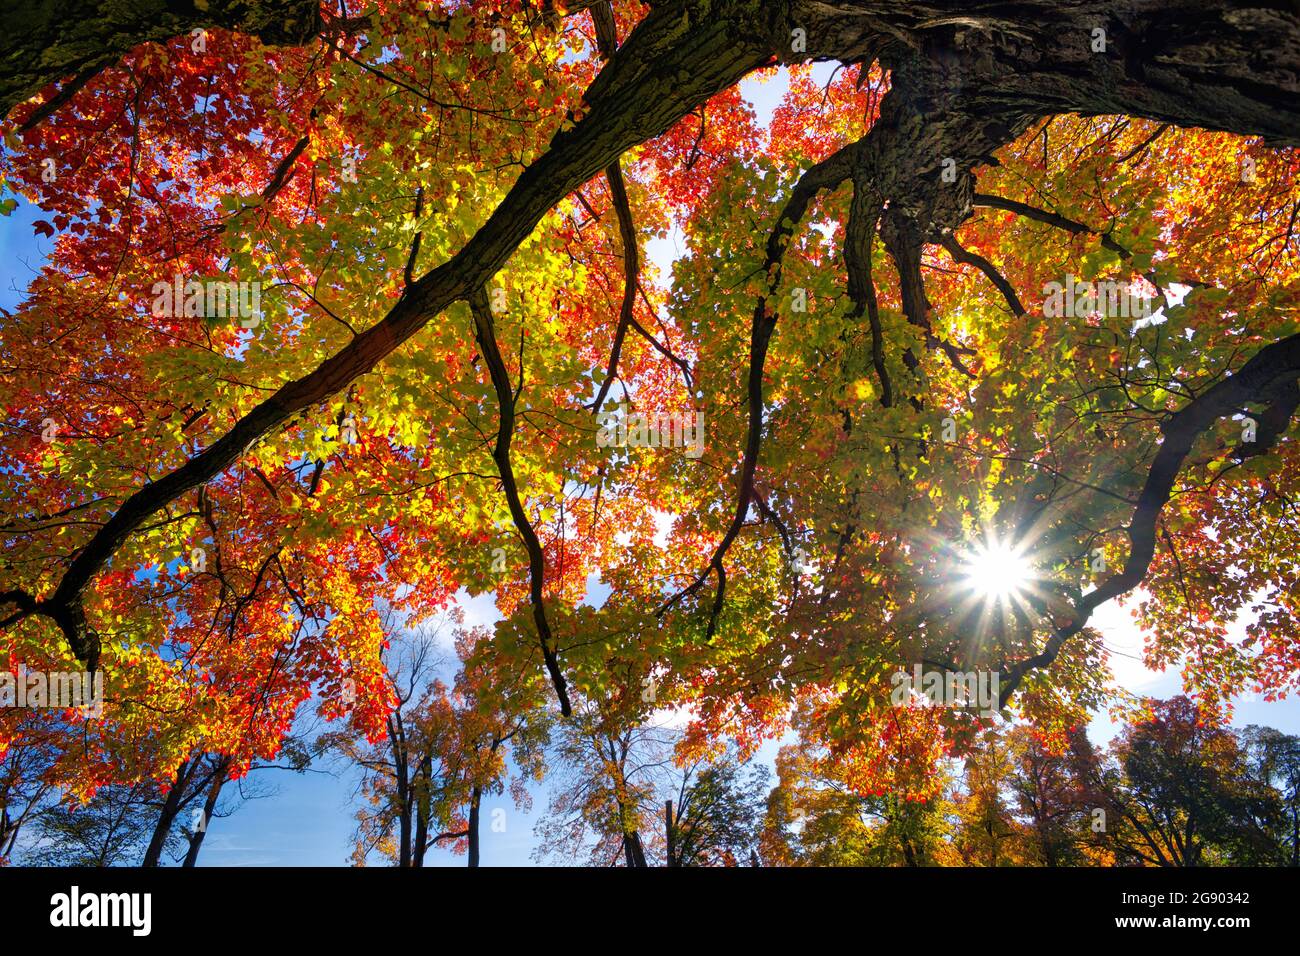 Vista en ángulo bajo del árbol de arce con un velo óptico Foto de stock